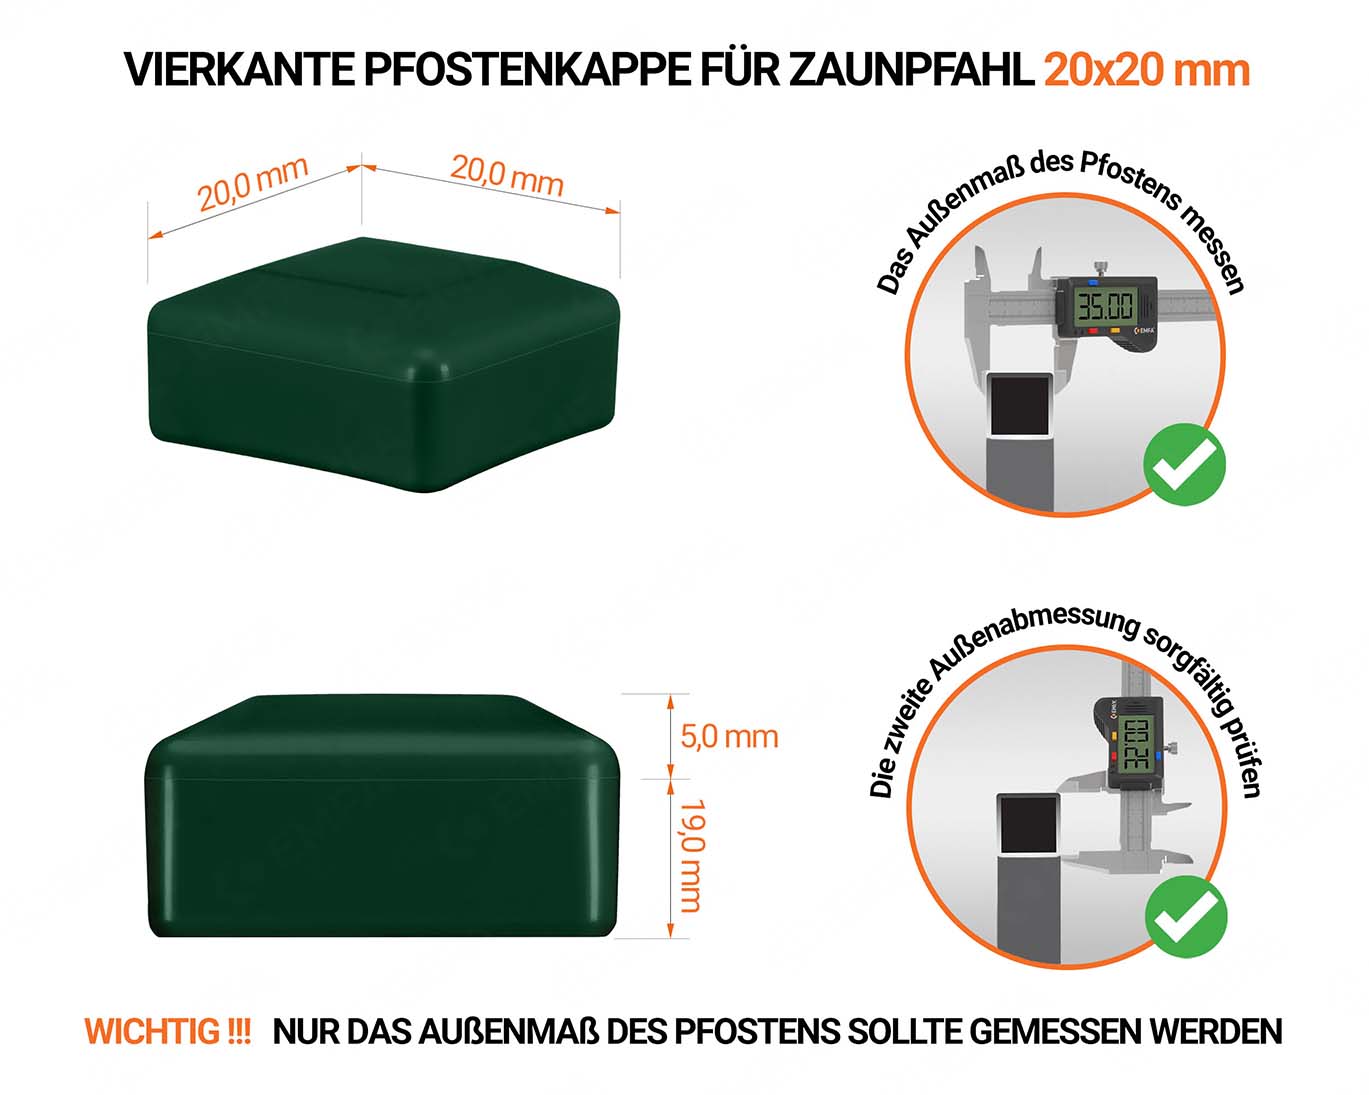 Grüne Pfostenkappen vierkant für Pfostenmaße 20x20 mm  mit technischen Abmessungen und Anleitung für korrekte Messung